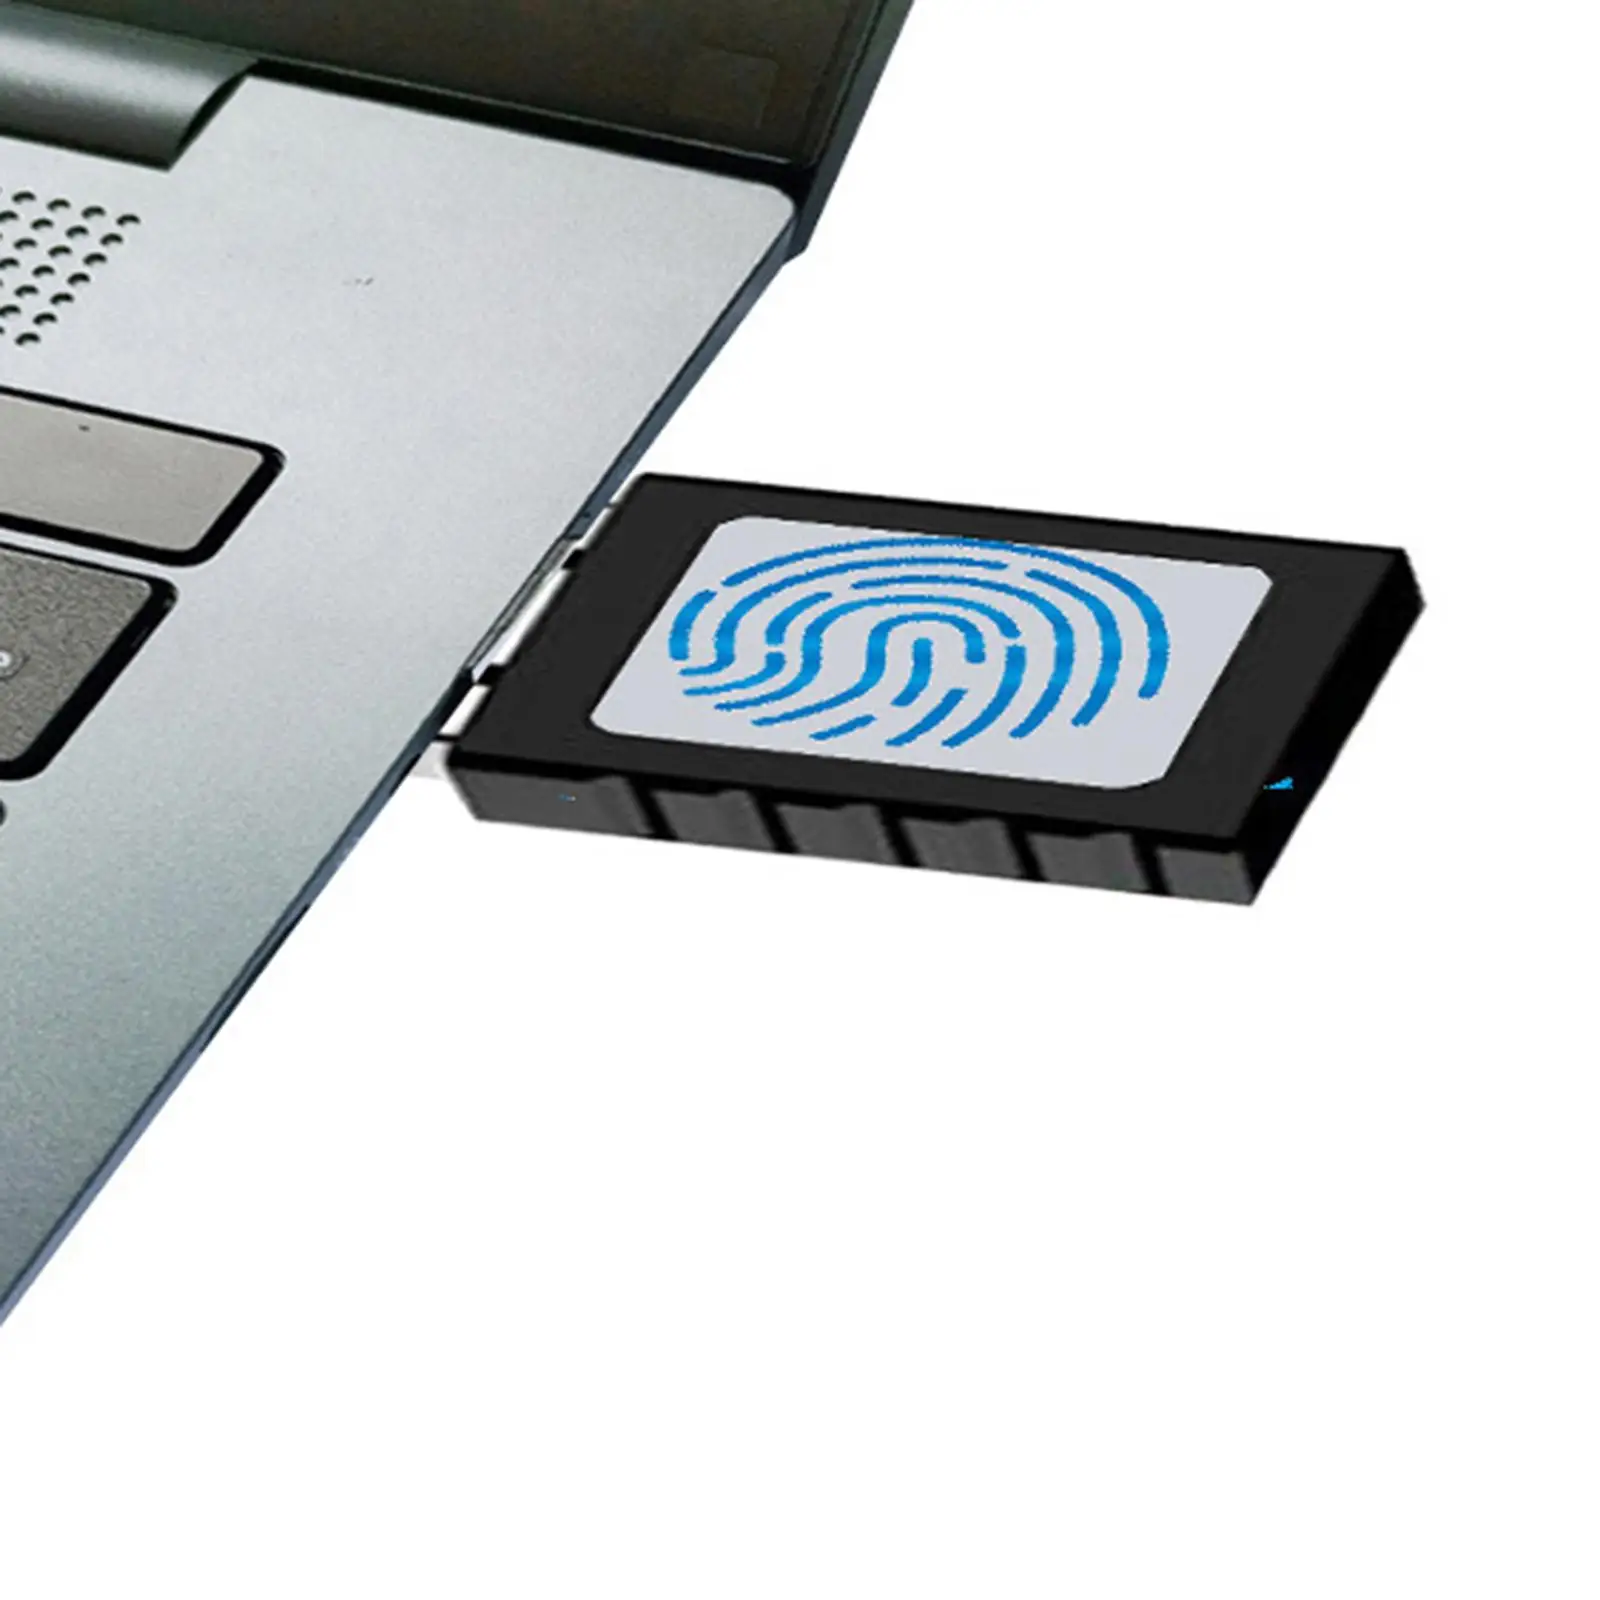 USB Fingerprint Reader Key Fingerprint Scanner Module Device for Windows 10 PC